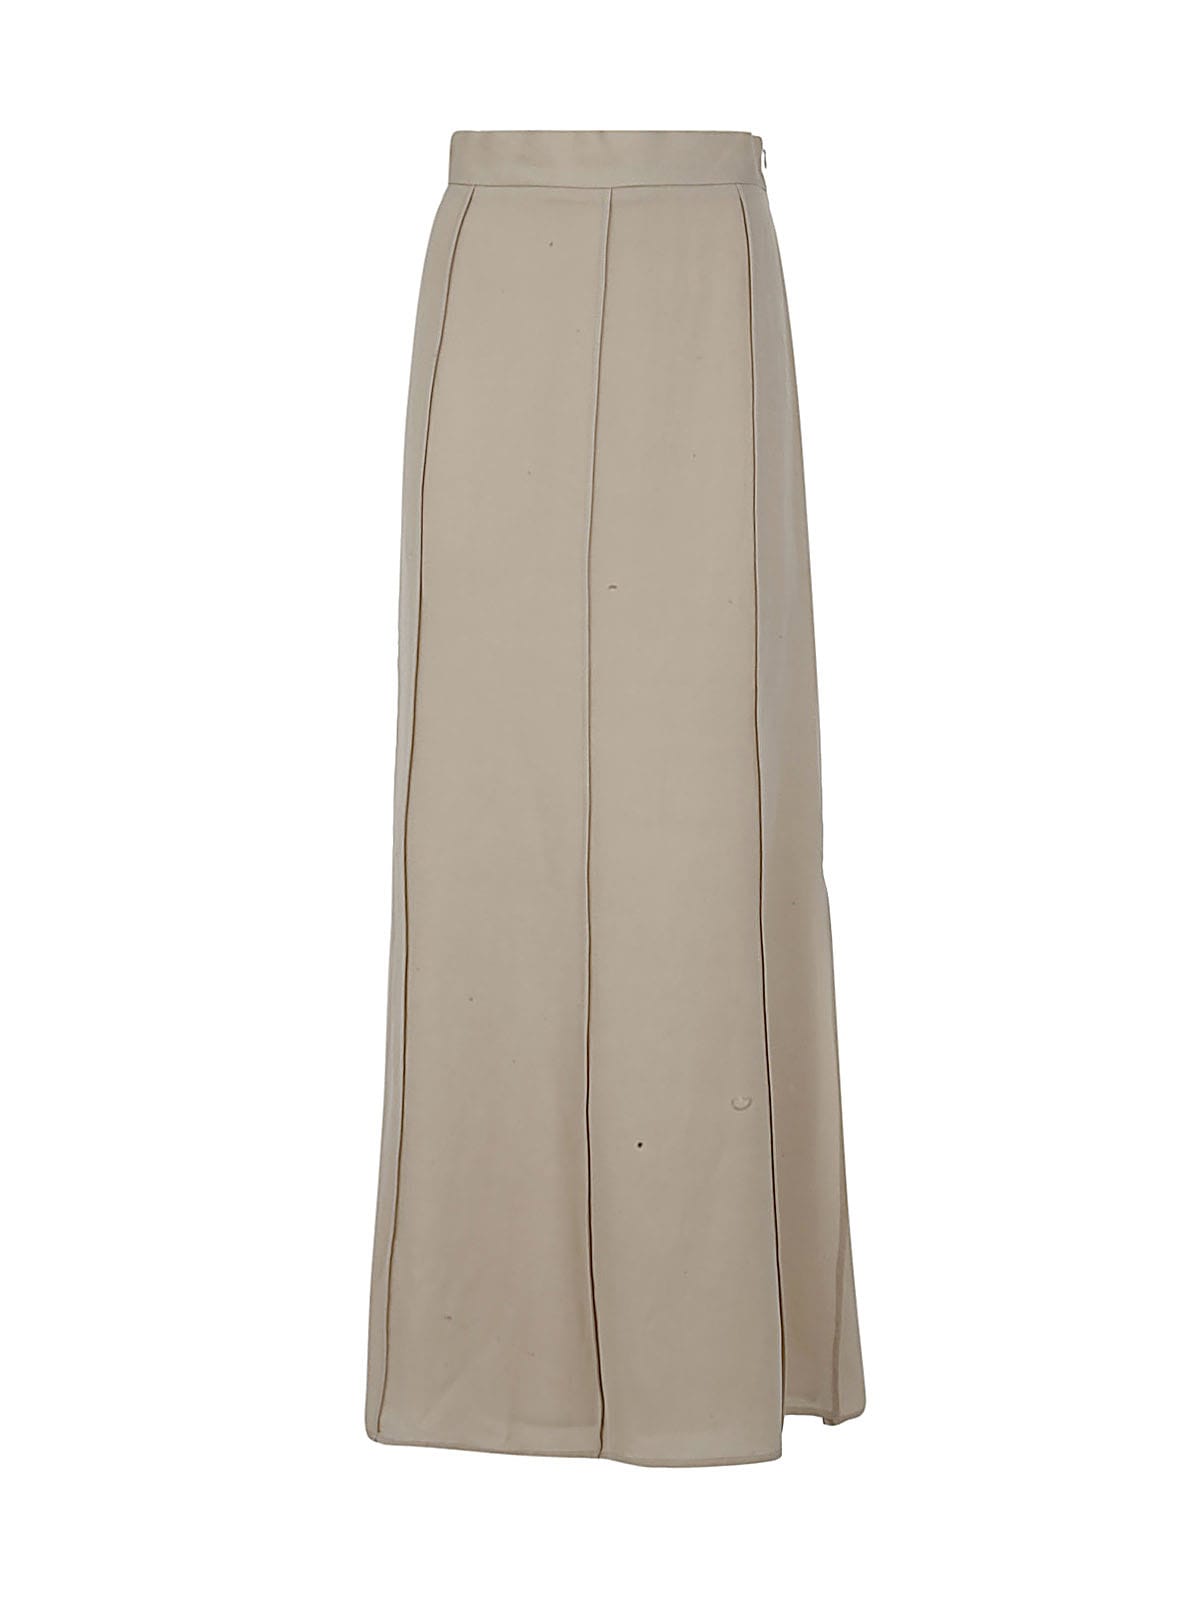 Antonelli Long Skirt With Splits On Bottom